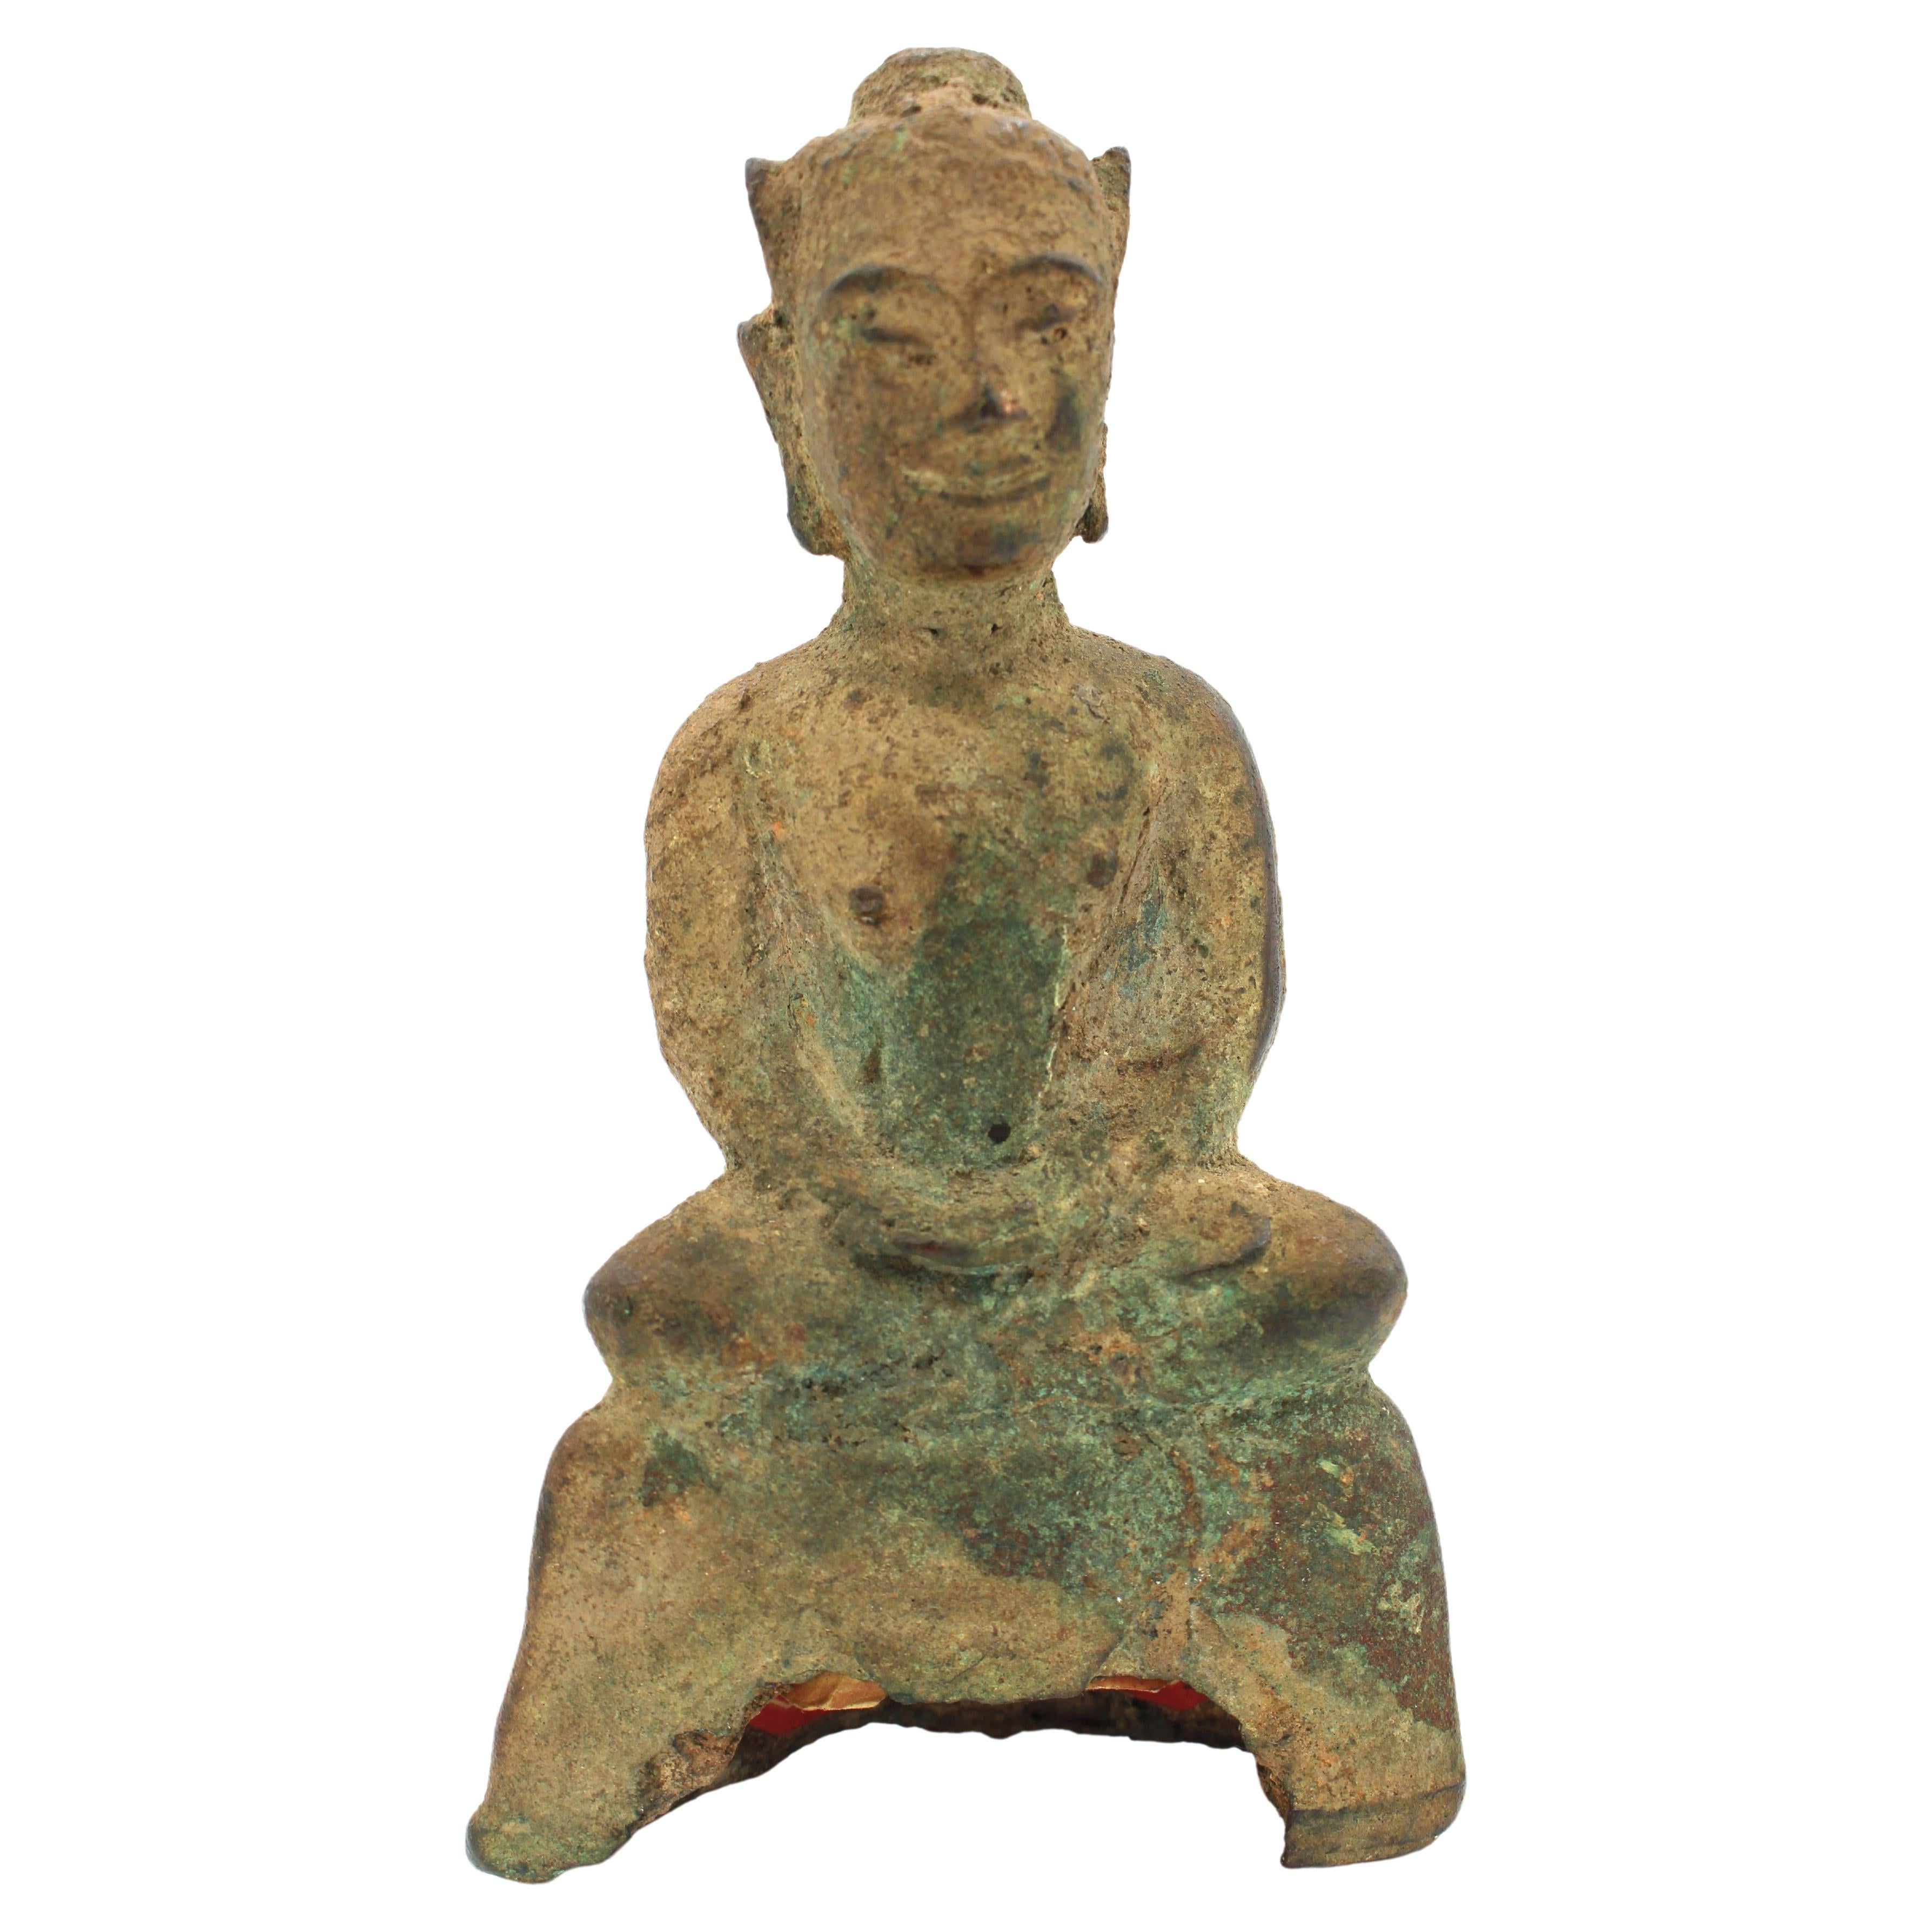 c. 1300-1500s Bronze Buddha From Aytthaya, Thailand